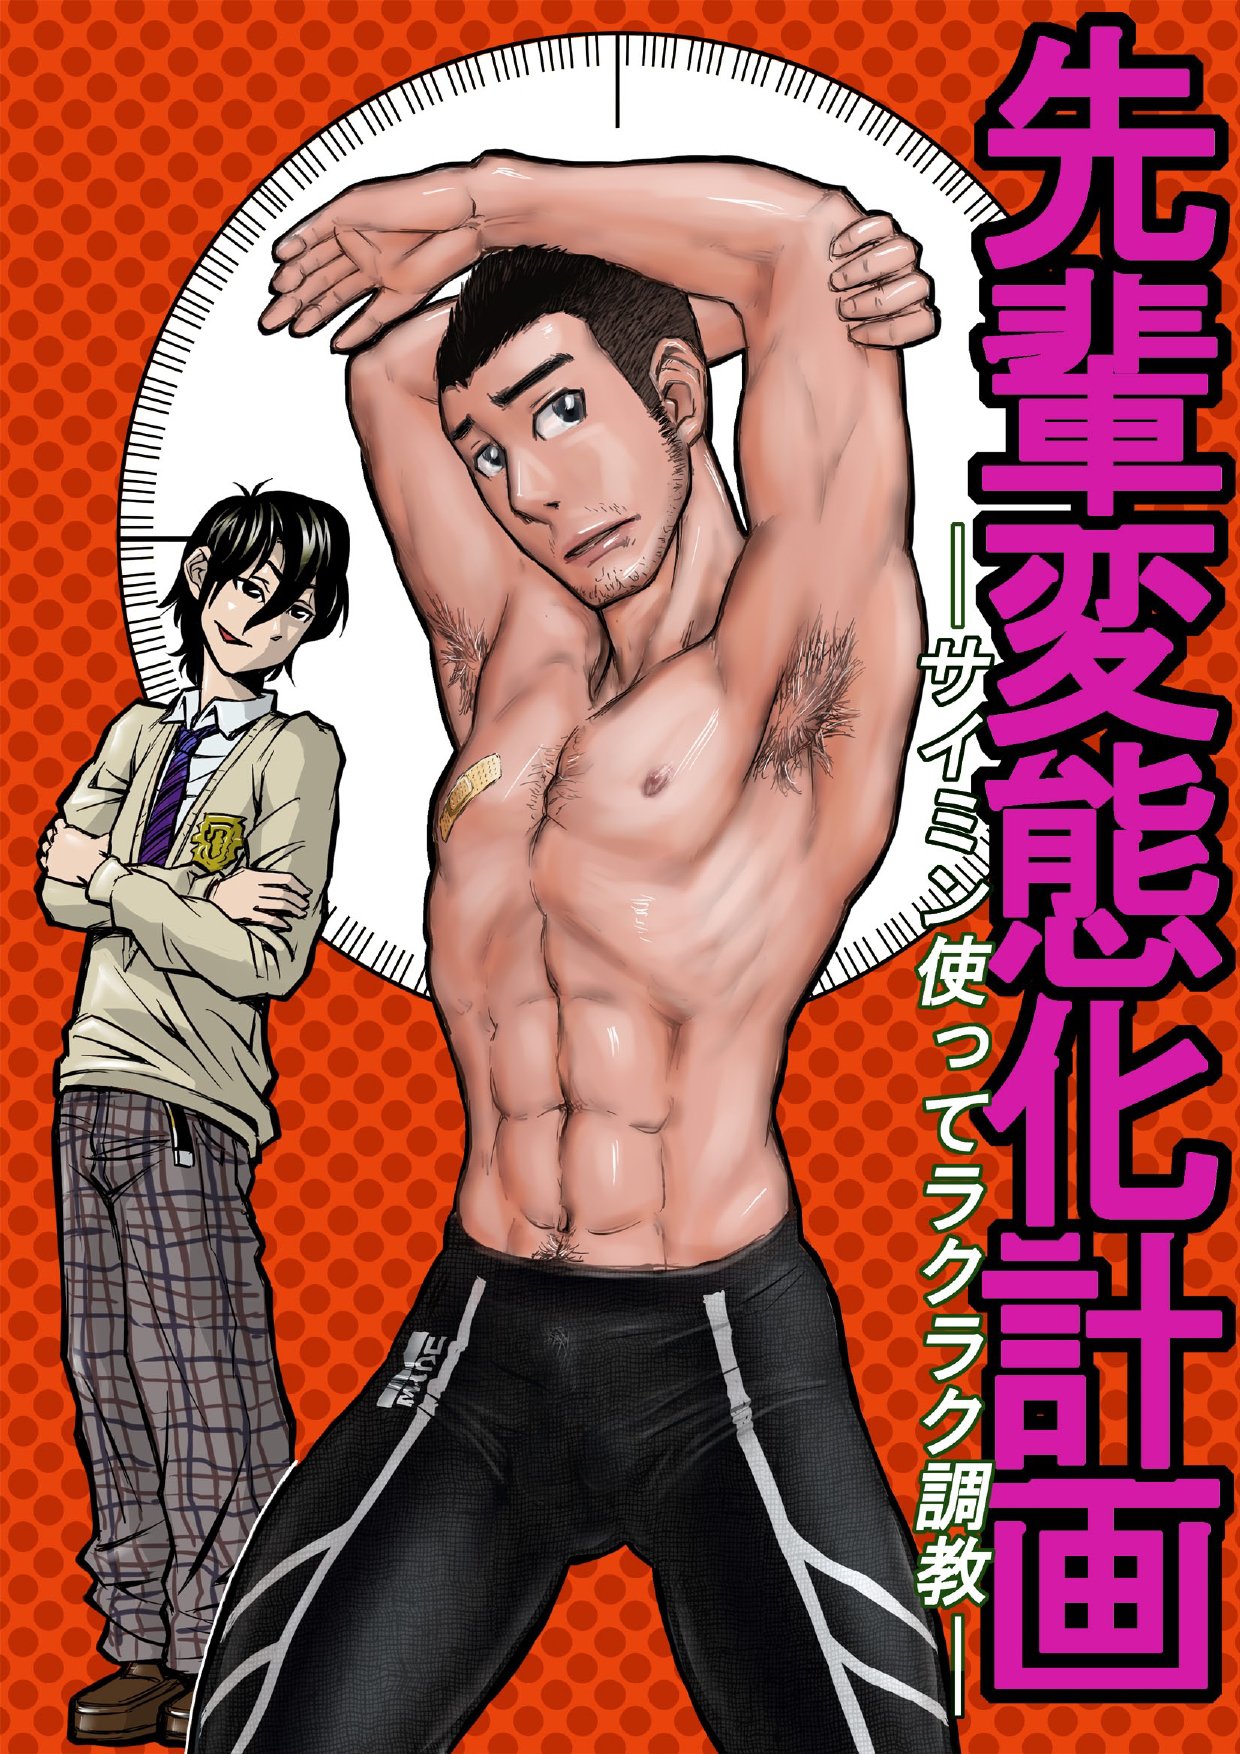 bara manga online monthly manful bouncer